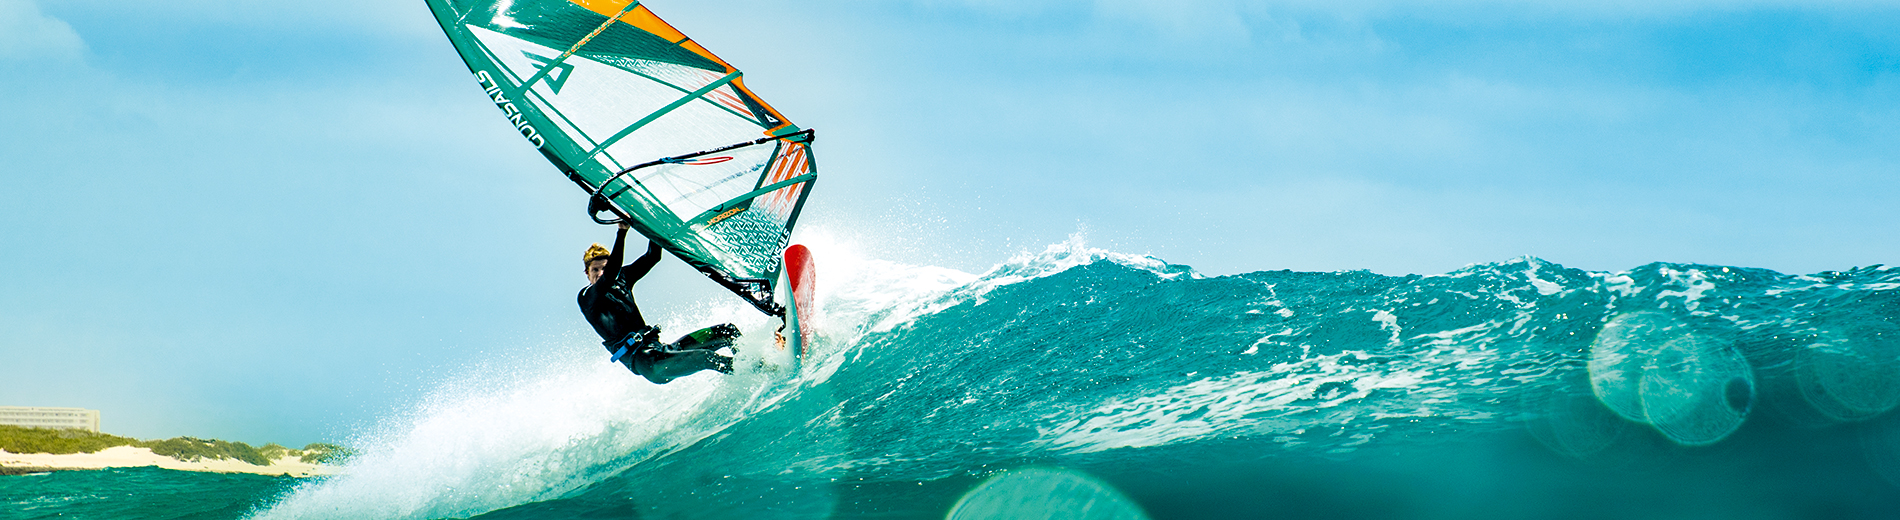 GUNSAILS | Julian Salmonn - PWA Worldtour Rider, Wave Windsurfing